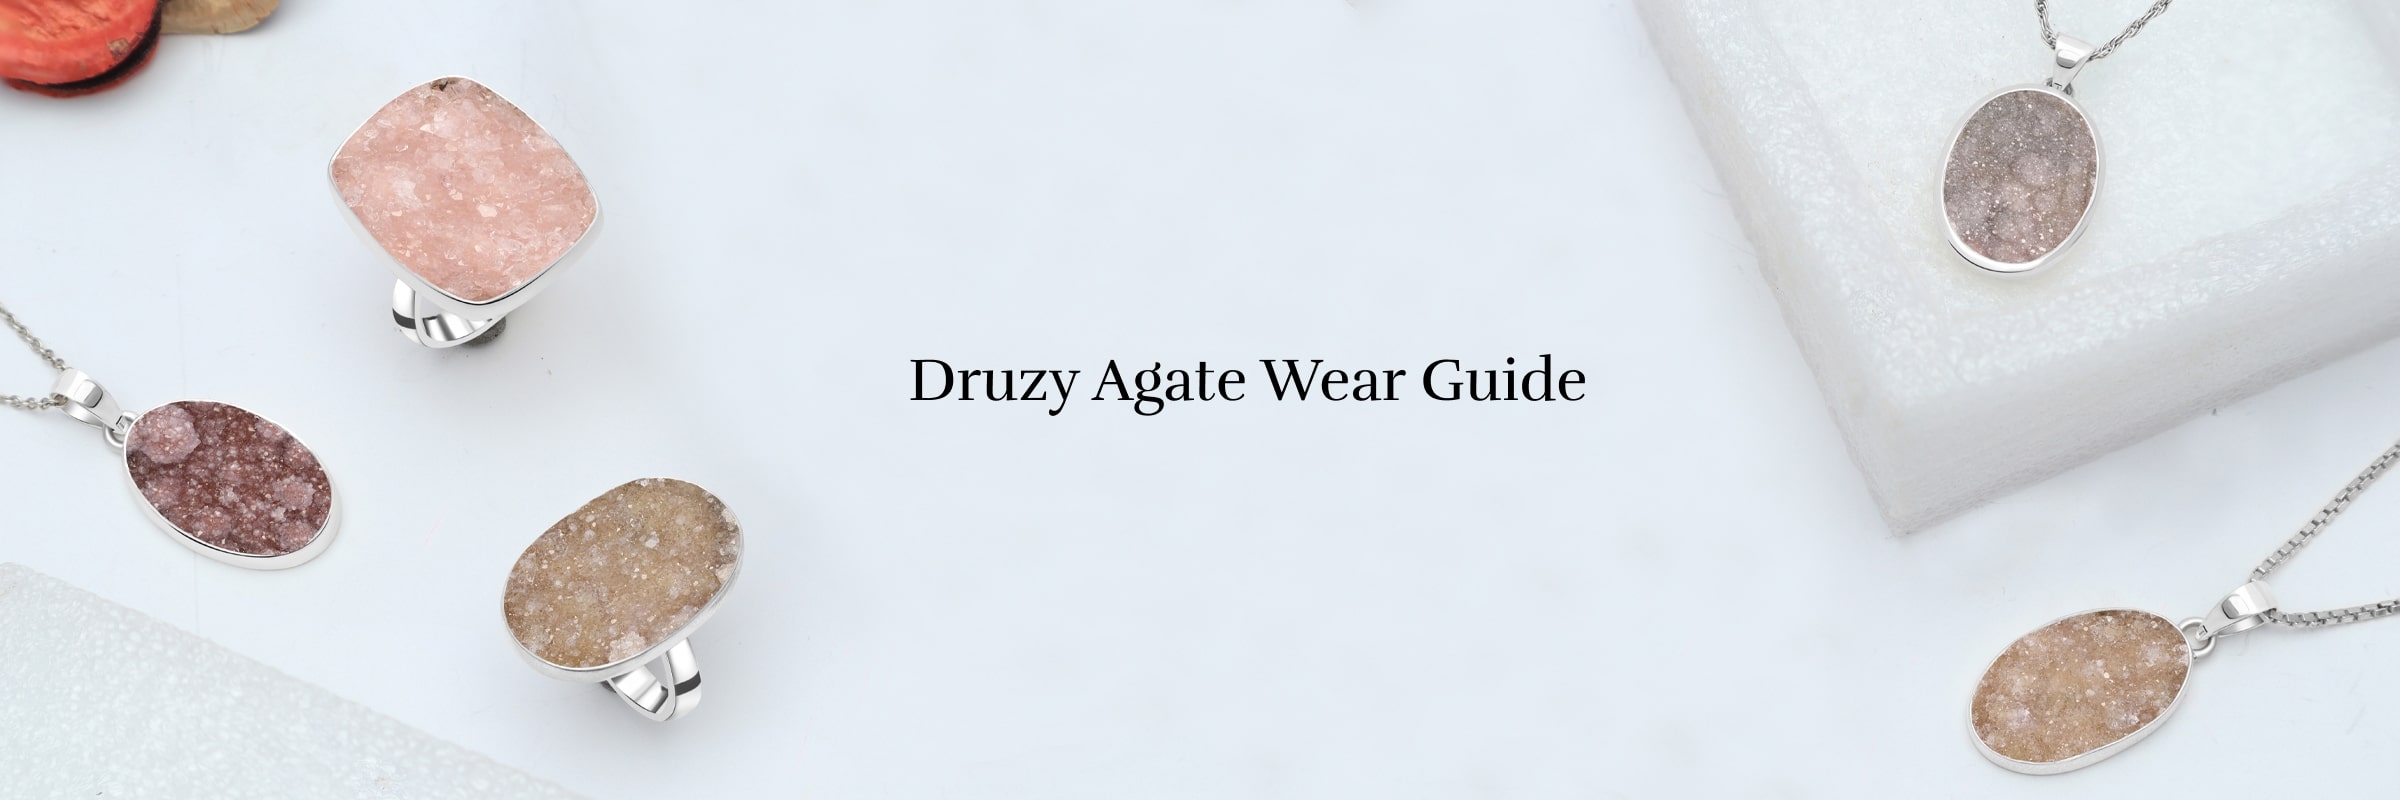 Who Should Wear Druzy Agate